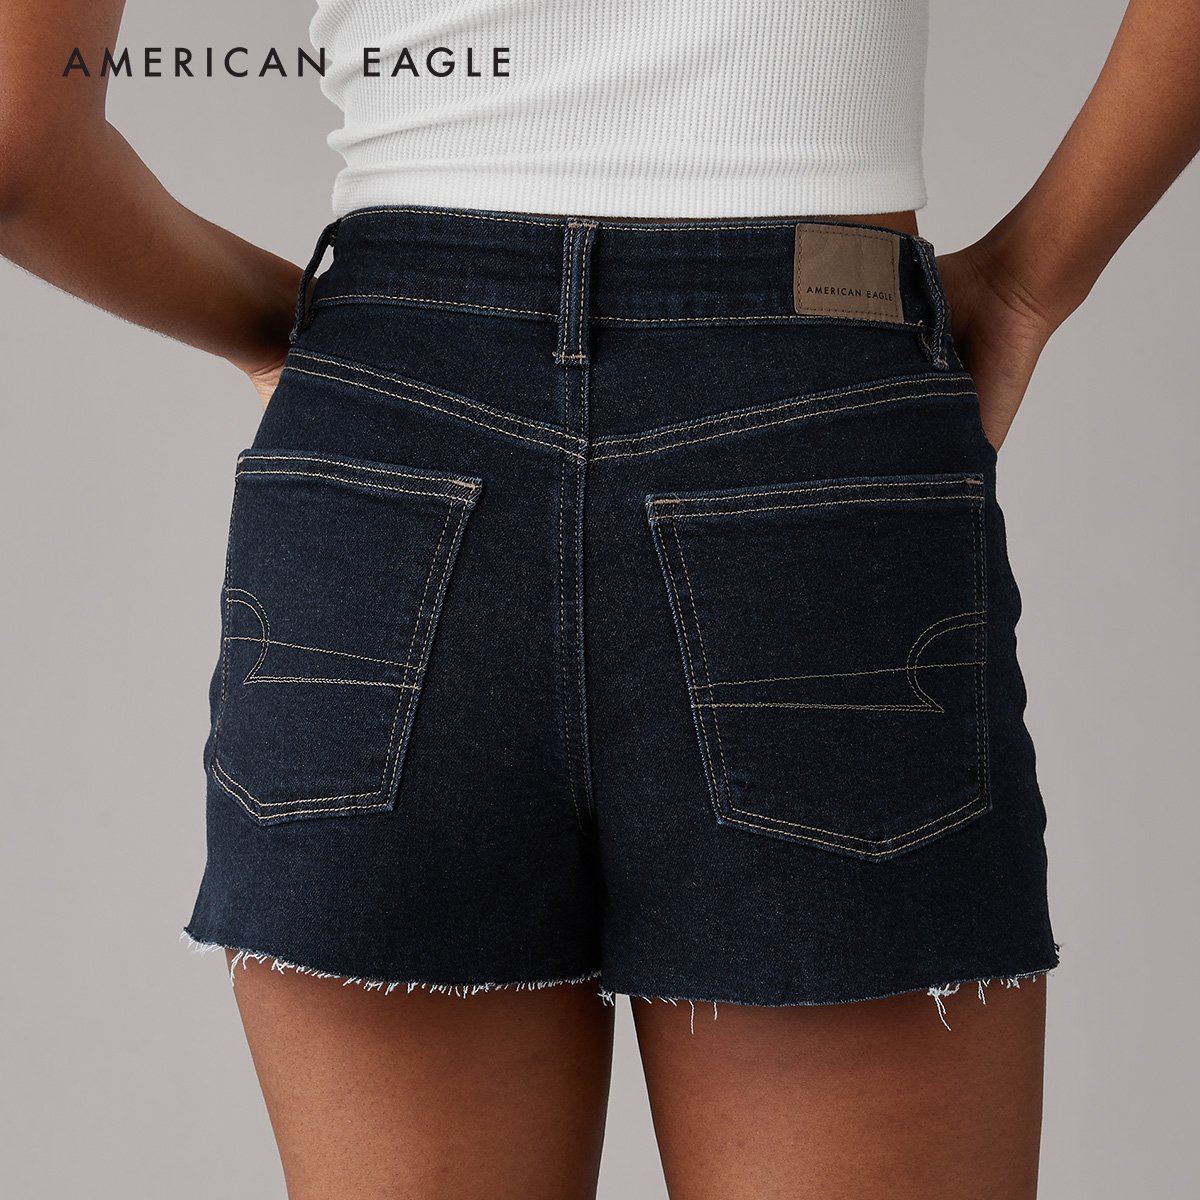 กางเกงยีนส์ขาสั้น American Eagle Stretch Crossover Waist Denim Mom Short กางเกง ยีนส์ ผู้หญิง ขาสั้น ทรงมัม (NWSS 033-7824-896)